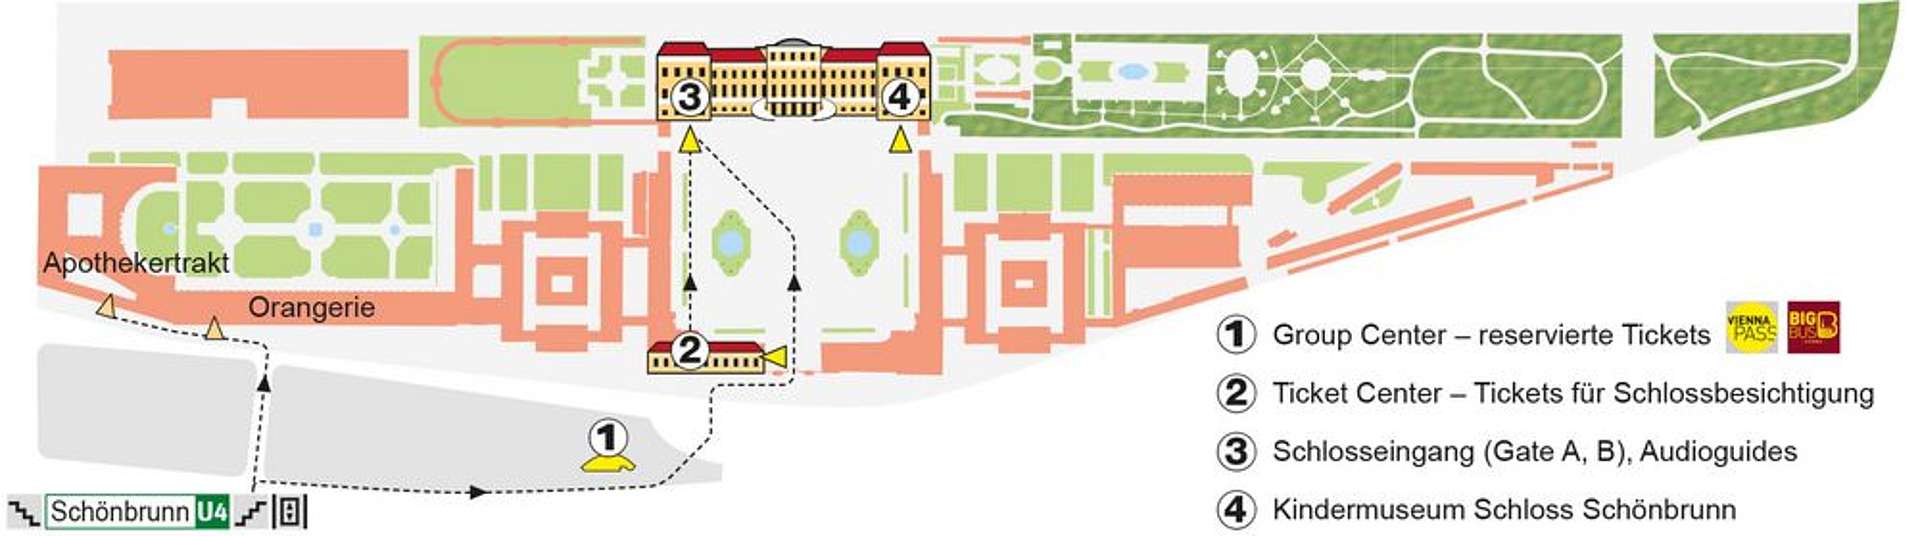 schonbrunn palace map